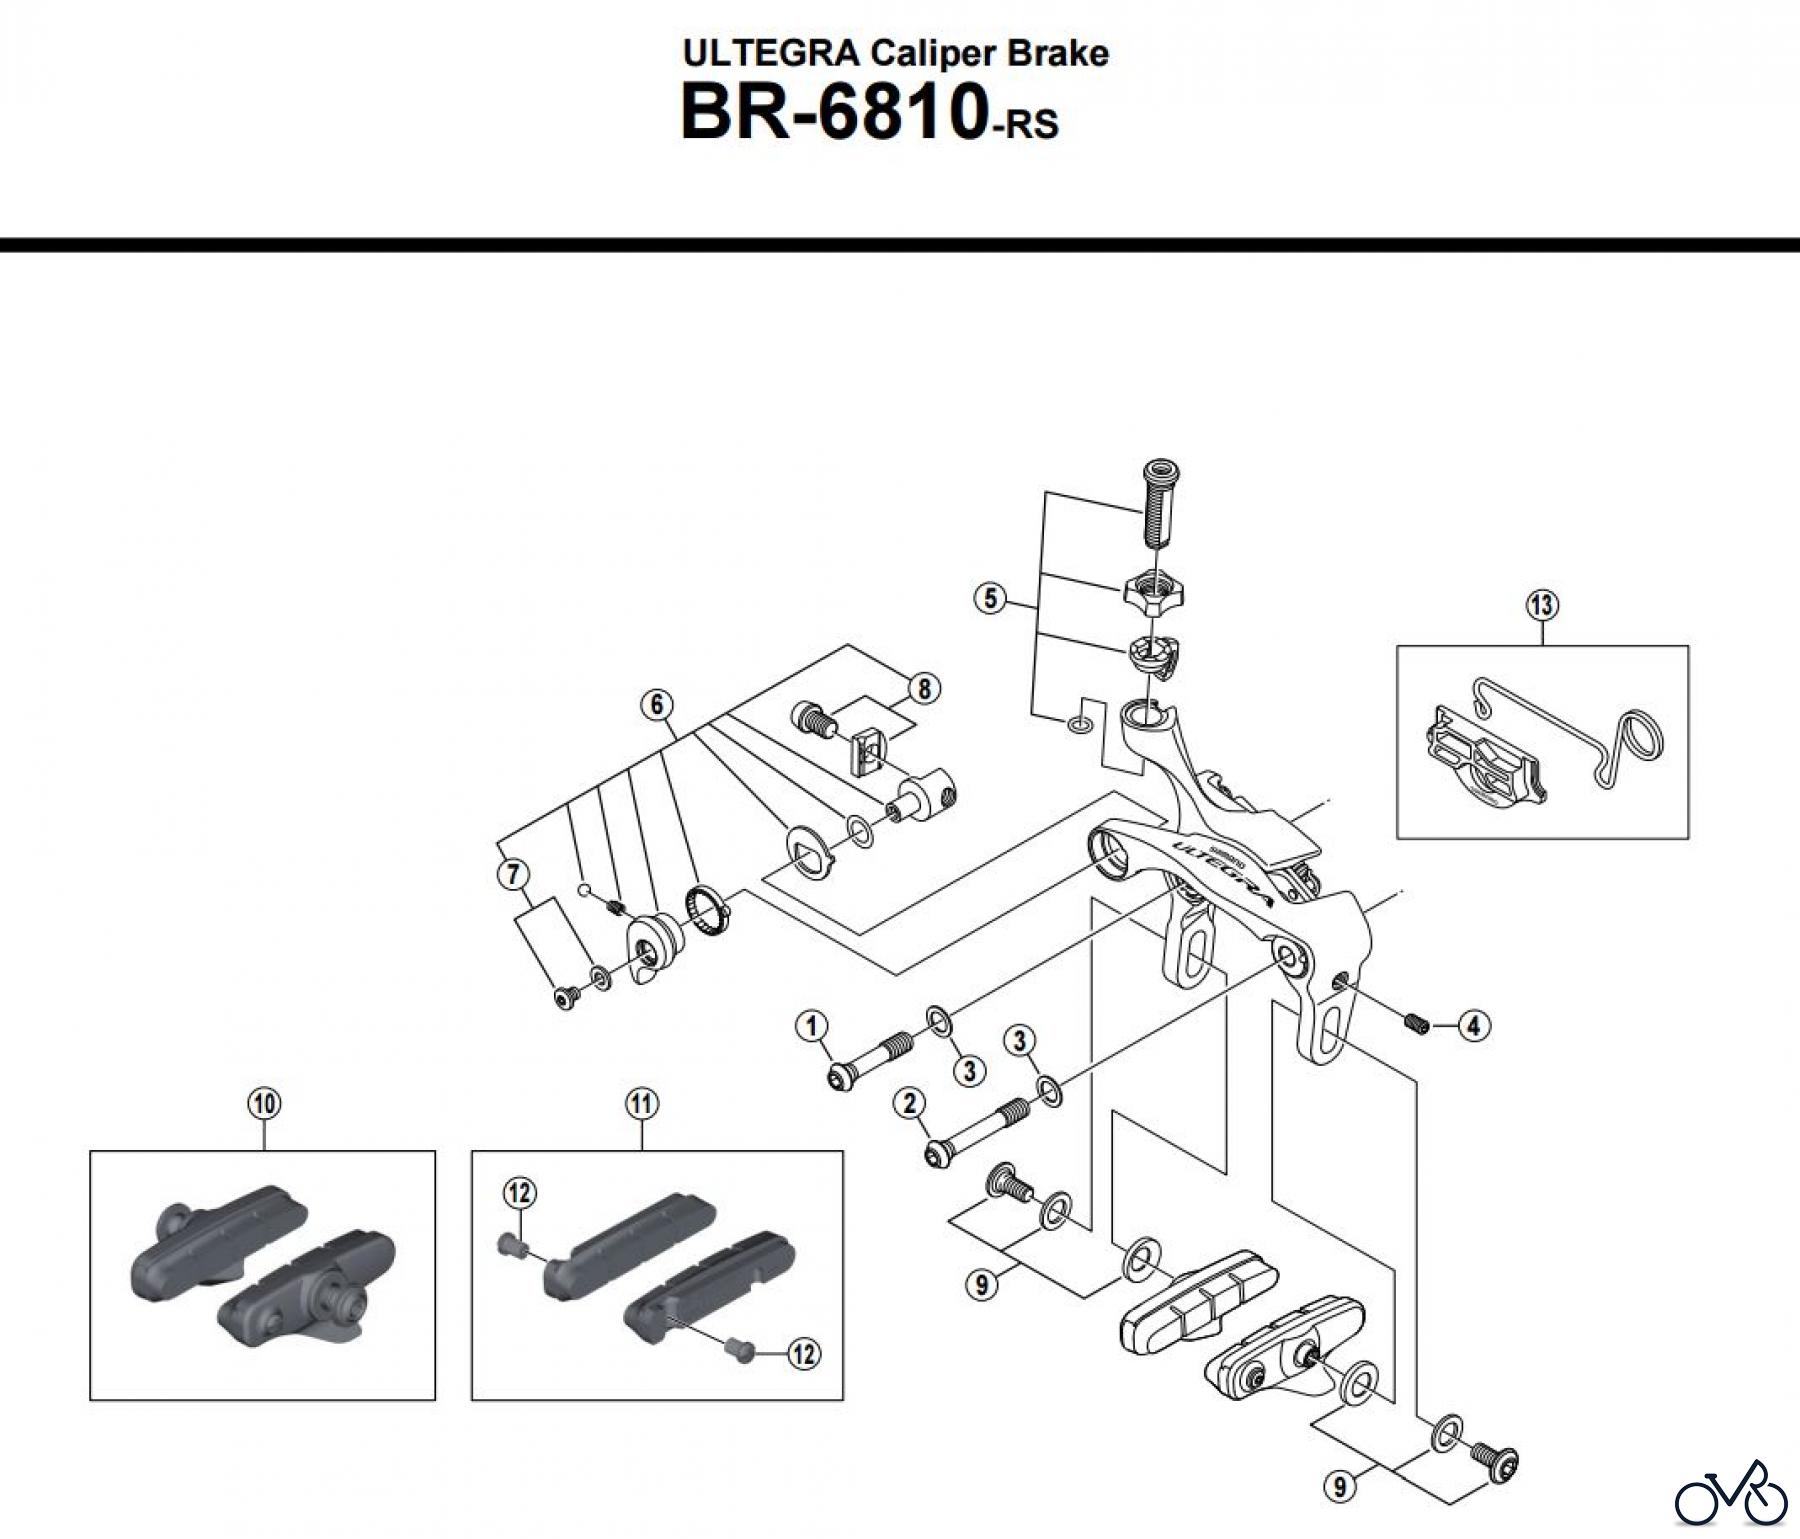  Shimano BR Brake - Bremse BR-6810-RS -3773 ULTEGRA Caliper Brake